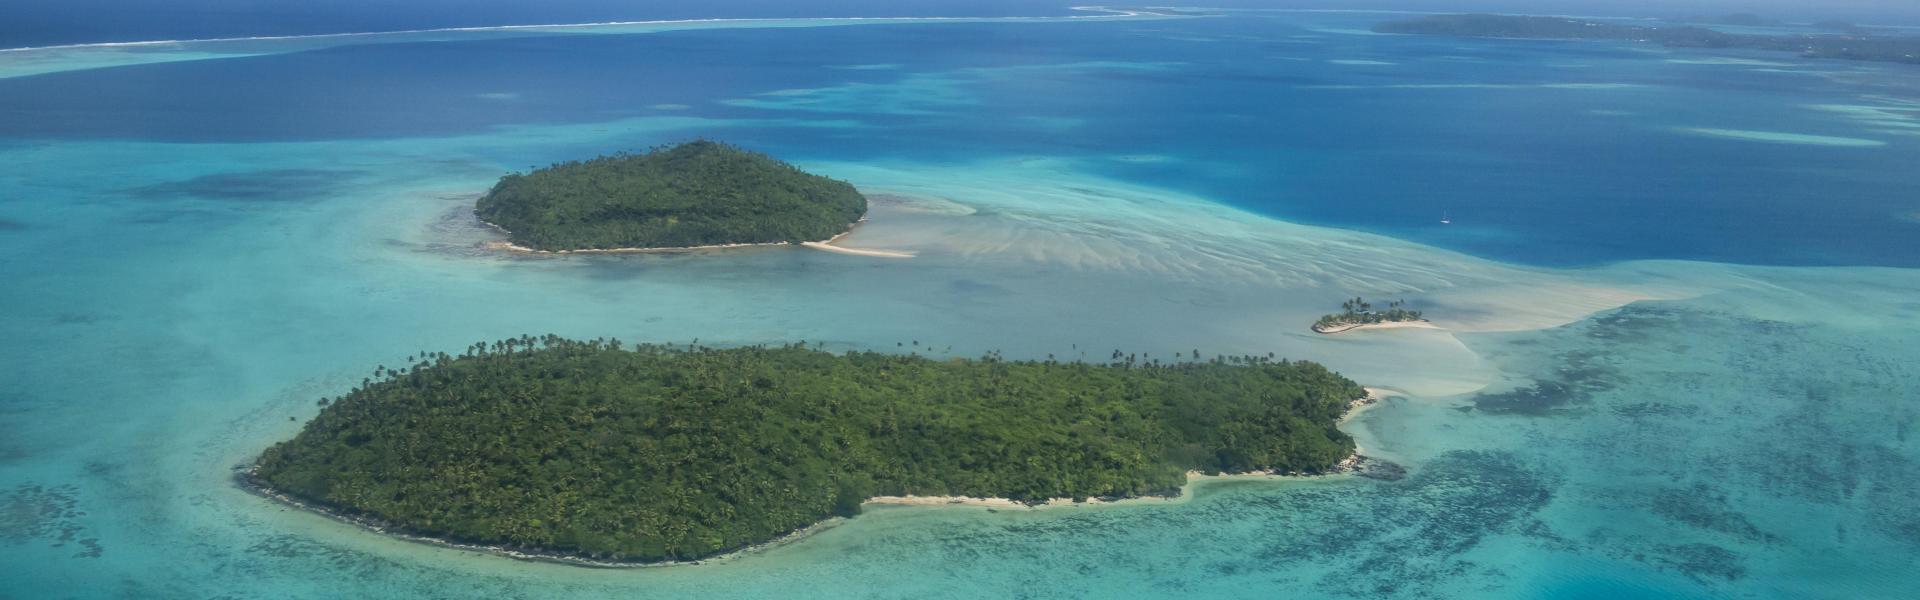 Location saisonnière de vacances, Wallis et Futuna - Amivac